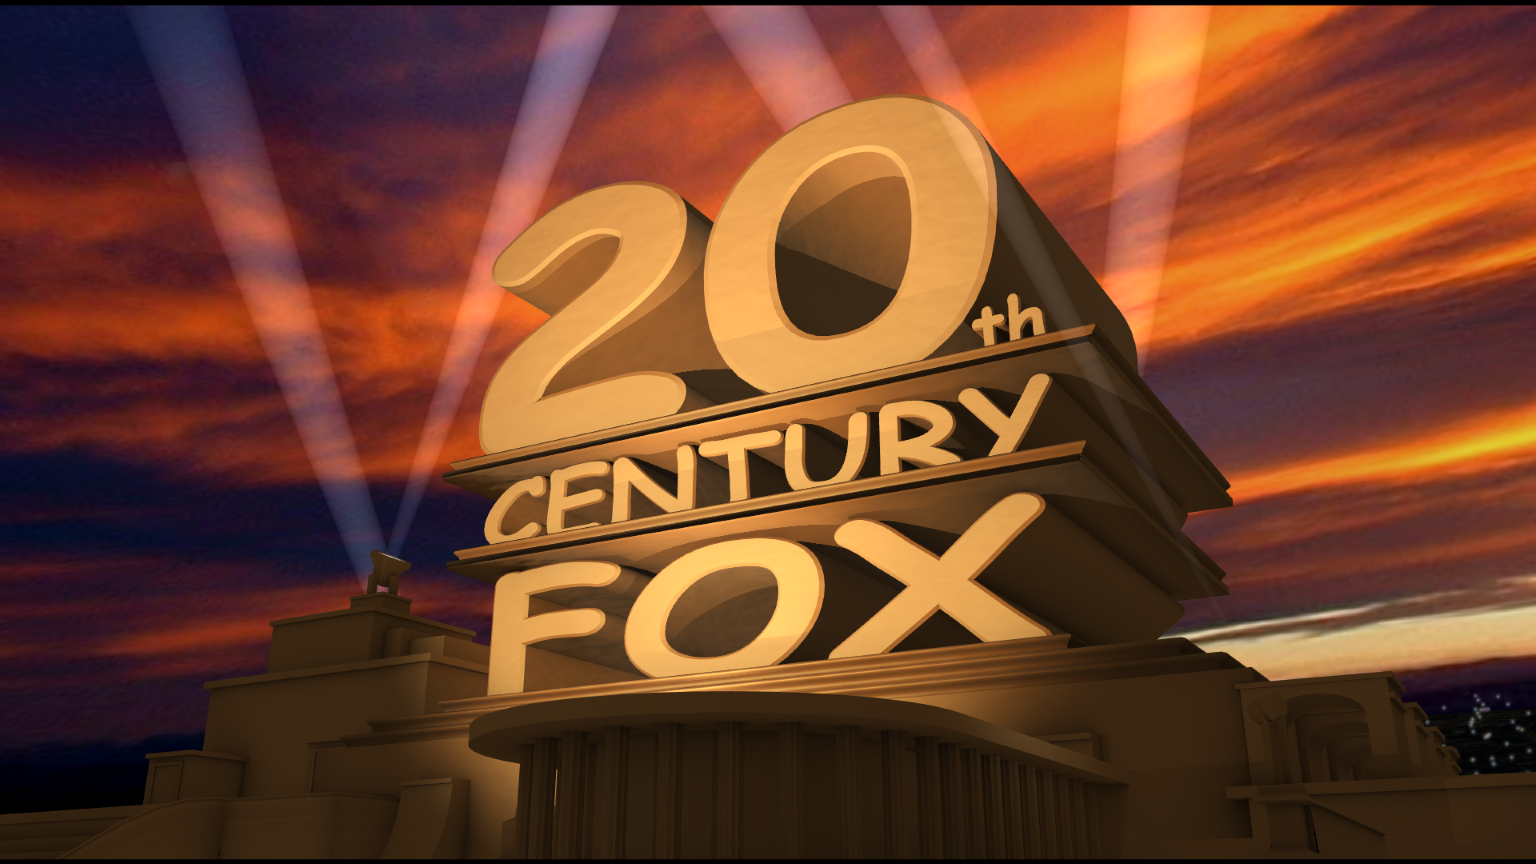 Киностудия двадцатый век Фокс. Интро в стиле 20th Century Fox. 20 Лет выпуска. Встреча выпускников 20 лет. 11 декабря 20 лет